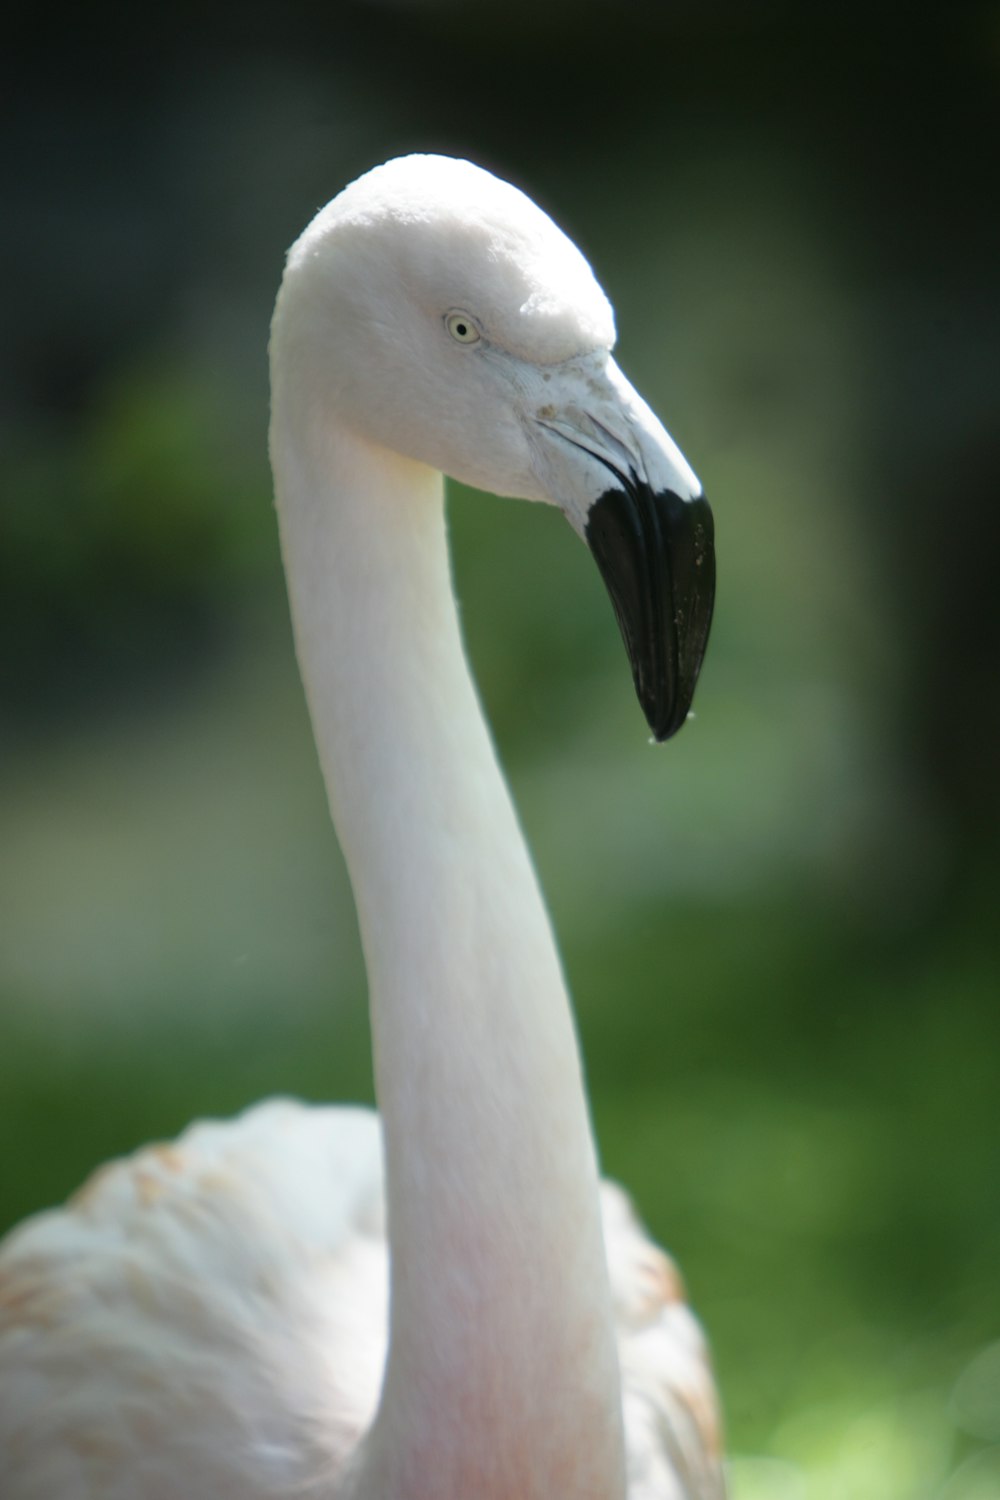 a white bird with a long neck